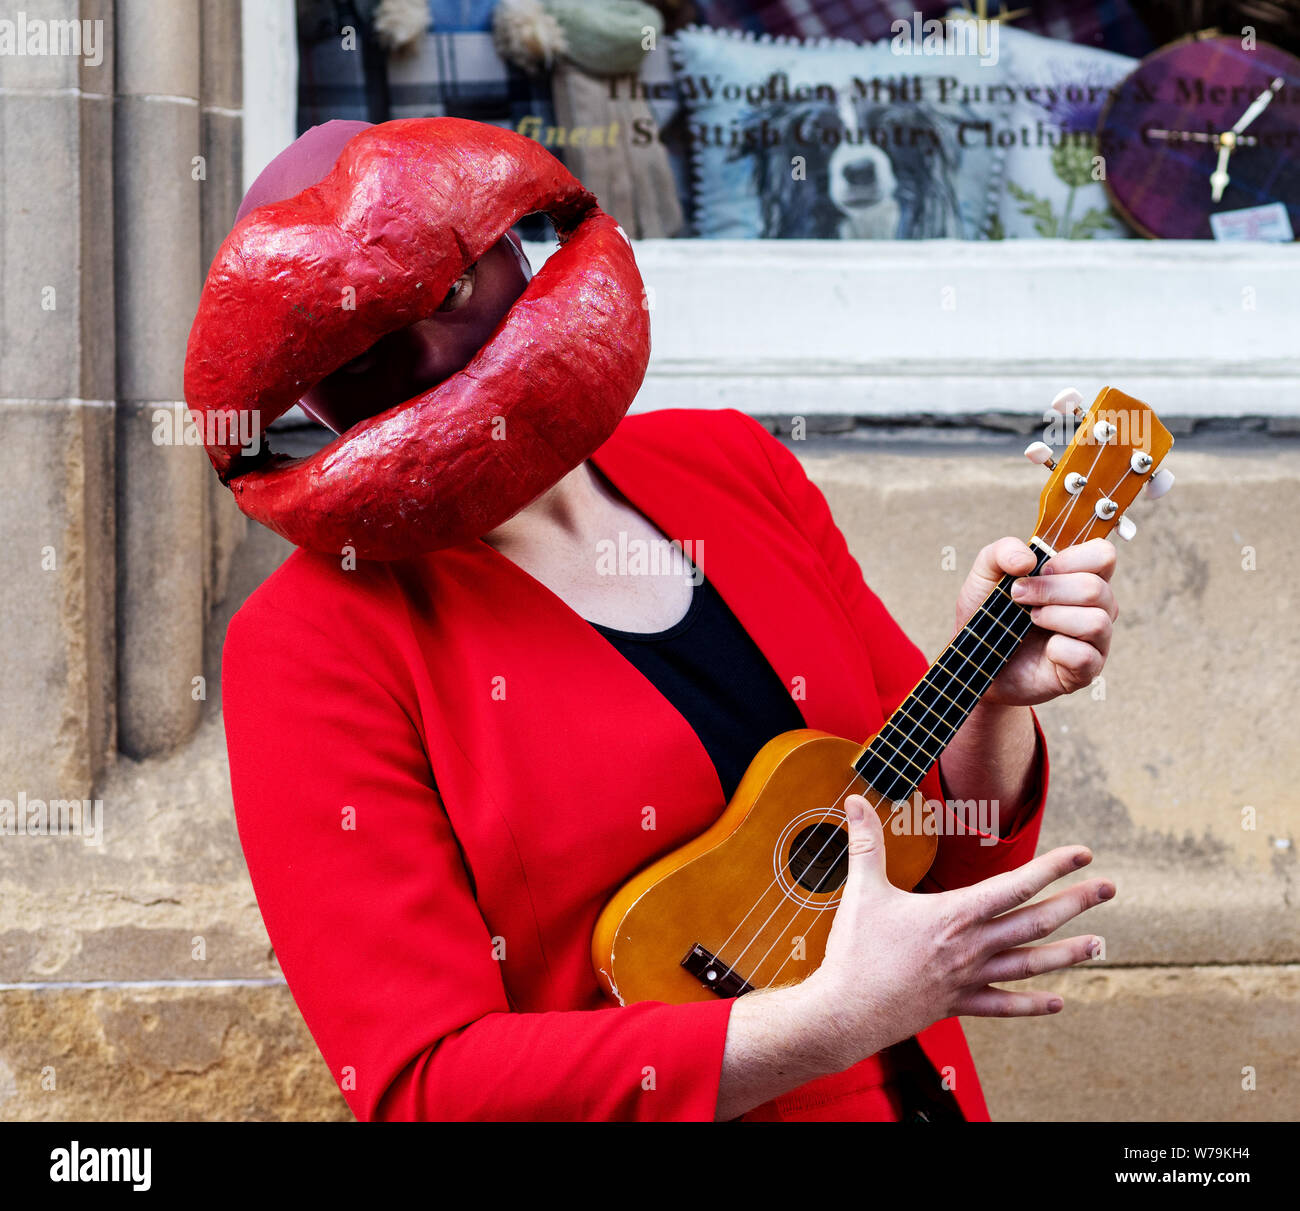 Eine Street Performer mit großen roten Lippen und ein ukelele Edinburgh Festival Fringe 2019 - The Royal Mile, Edinburgh, Schottland, Großbritannien. Stockfoto